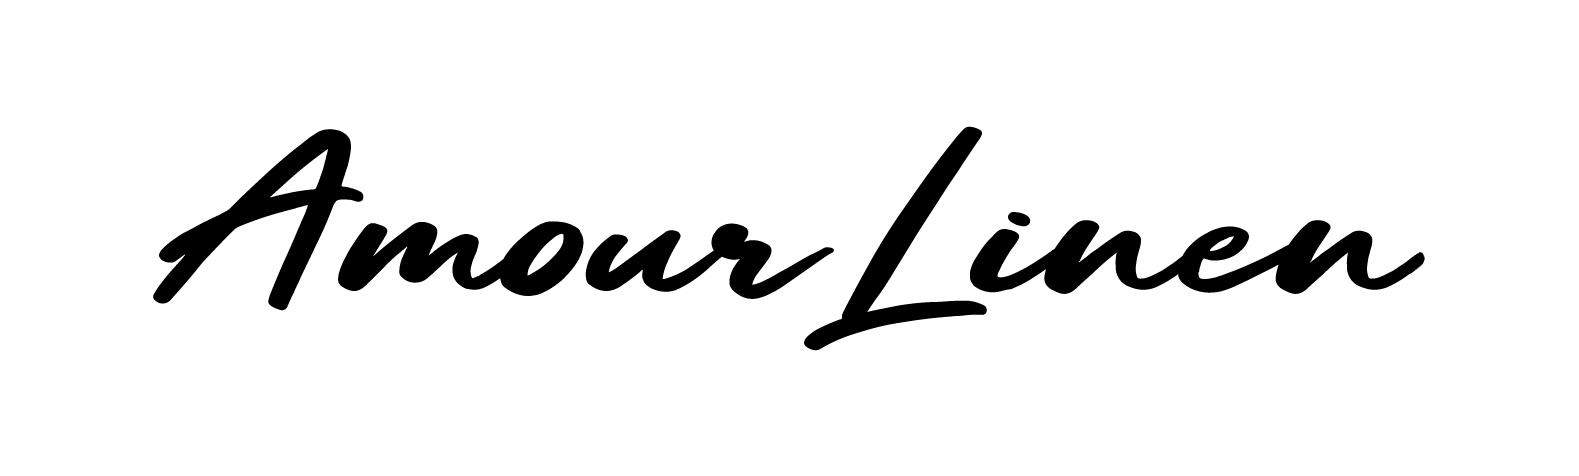 AmourLinen Logo- Hand Written